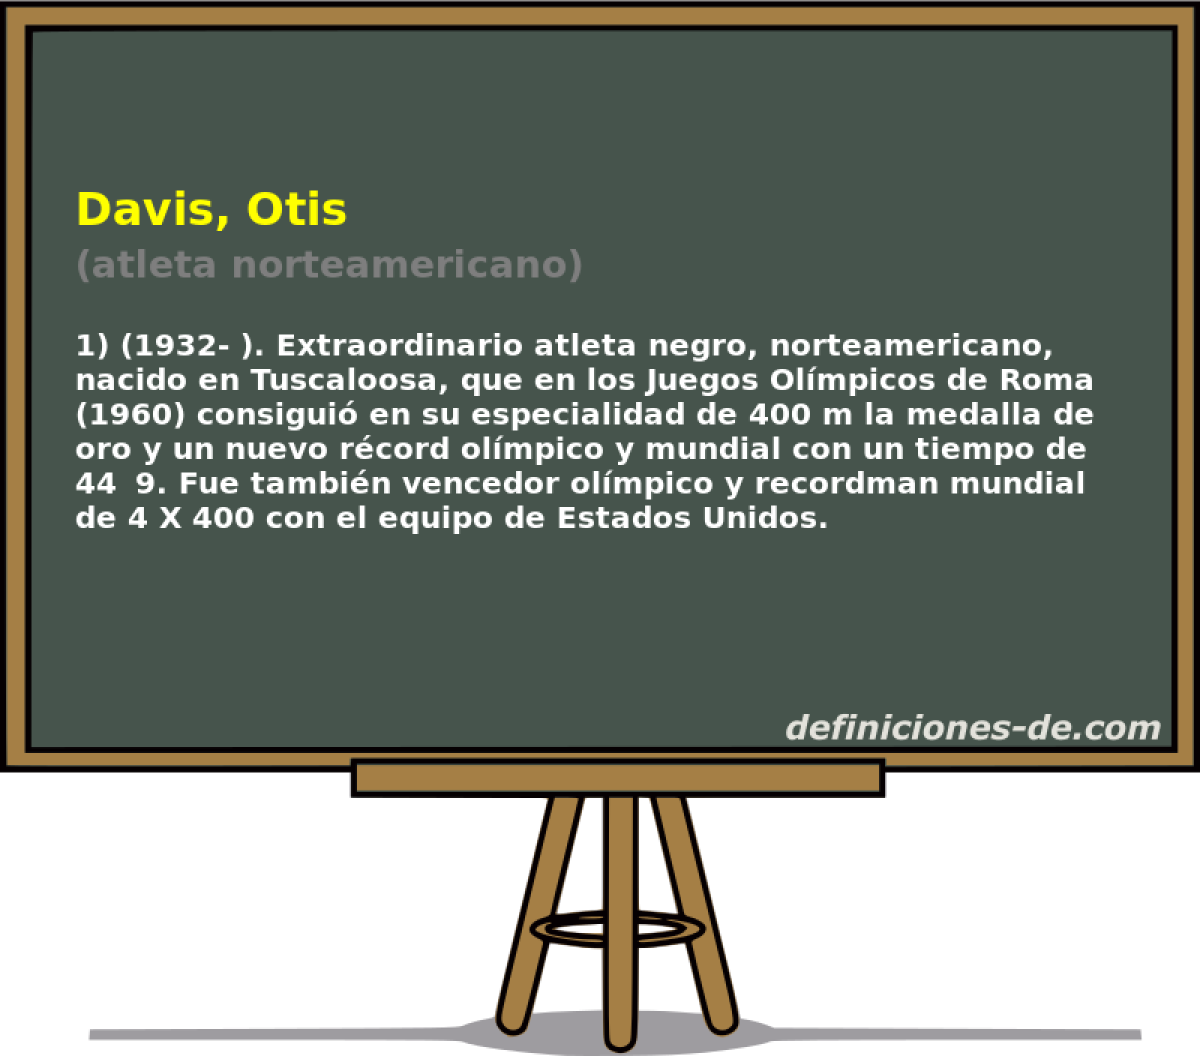 Davis, Otis (atleta norteamericano)